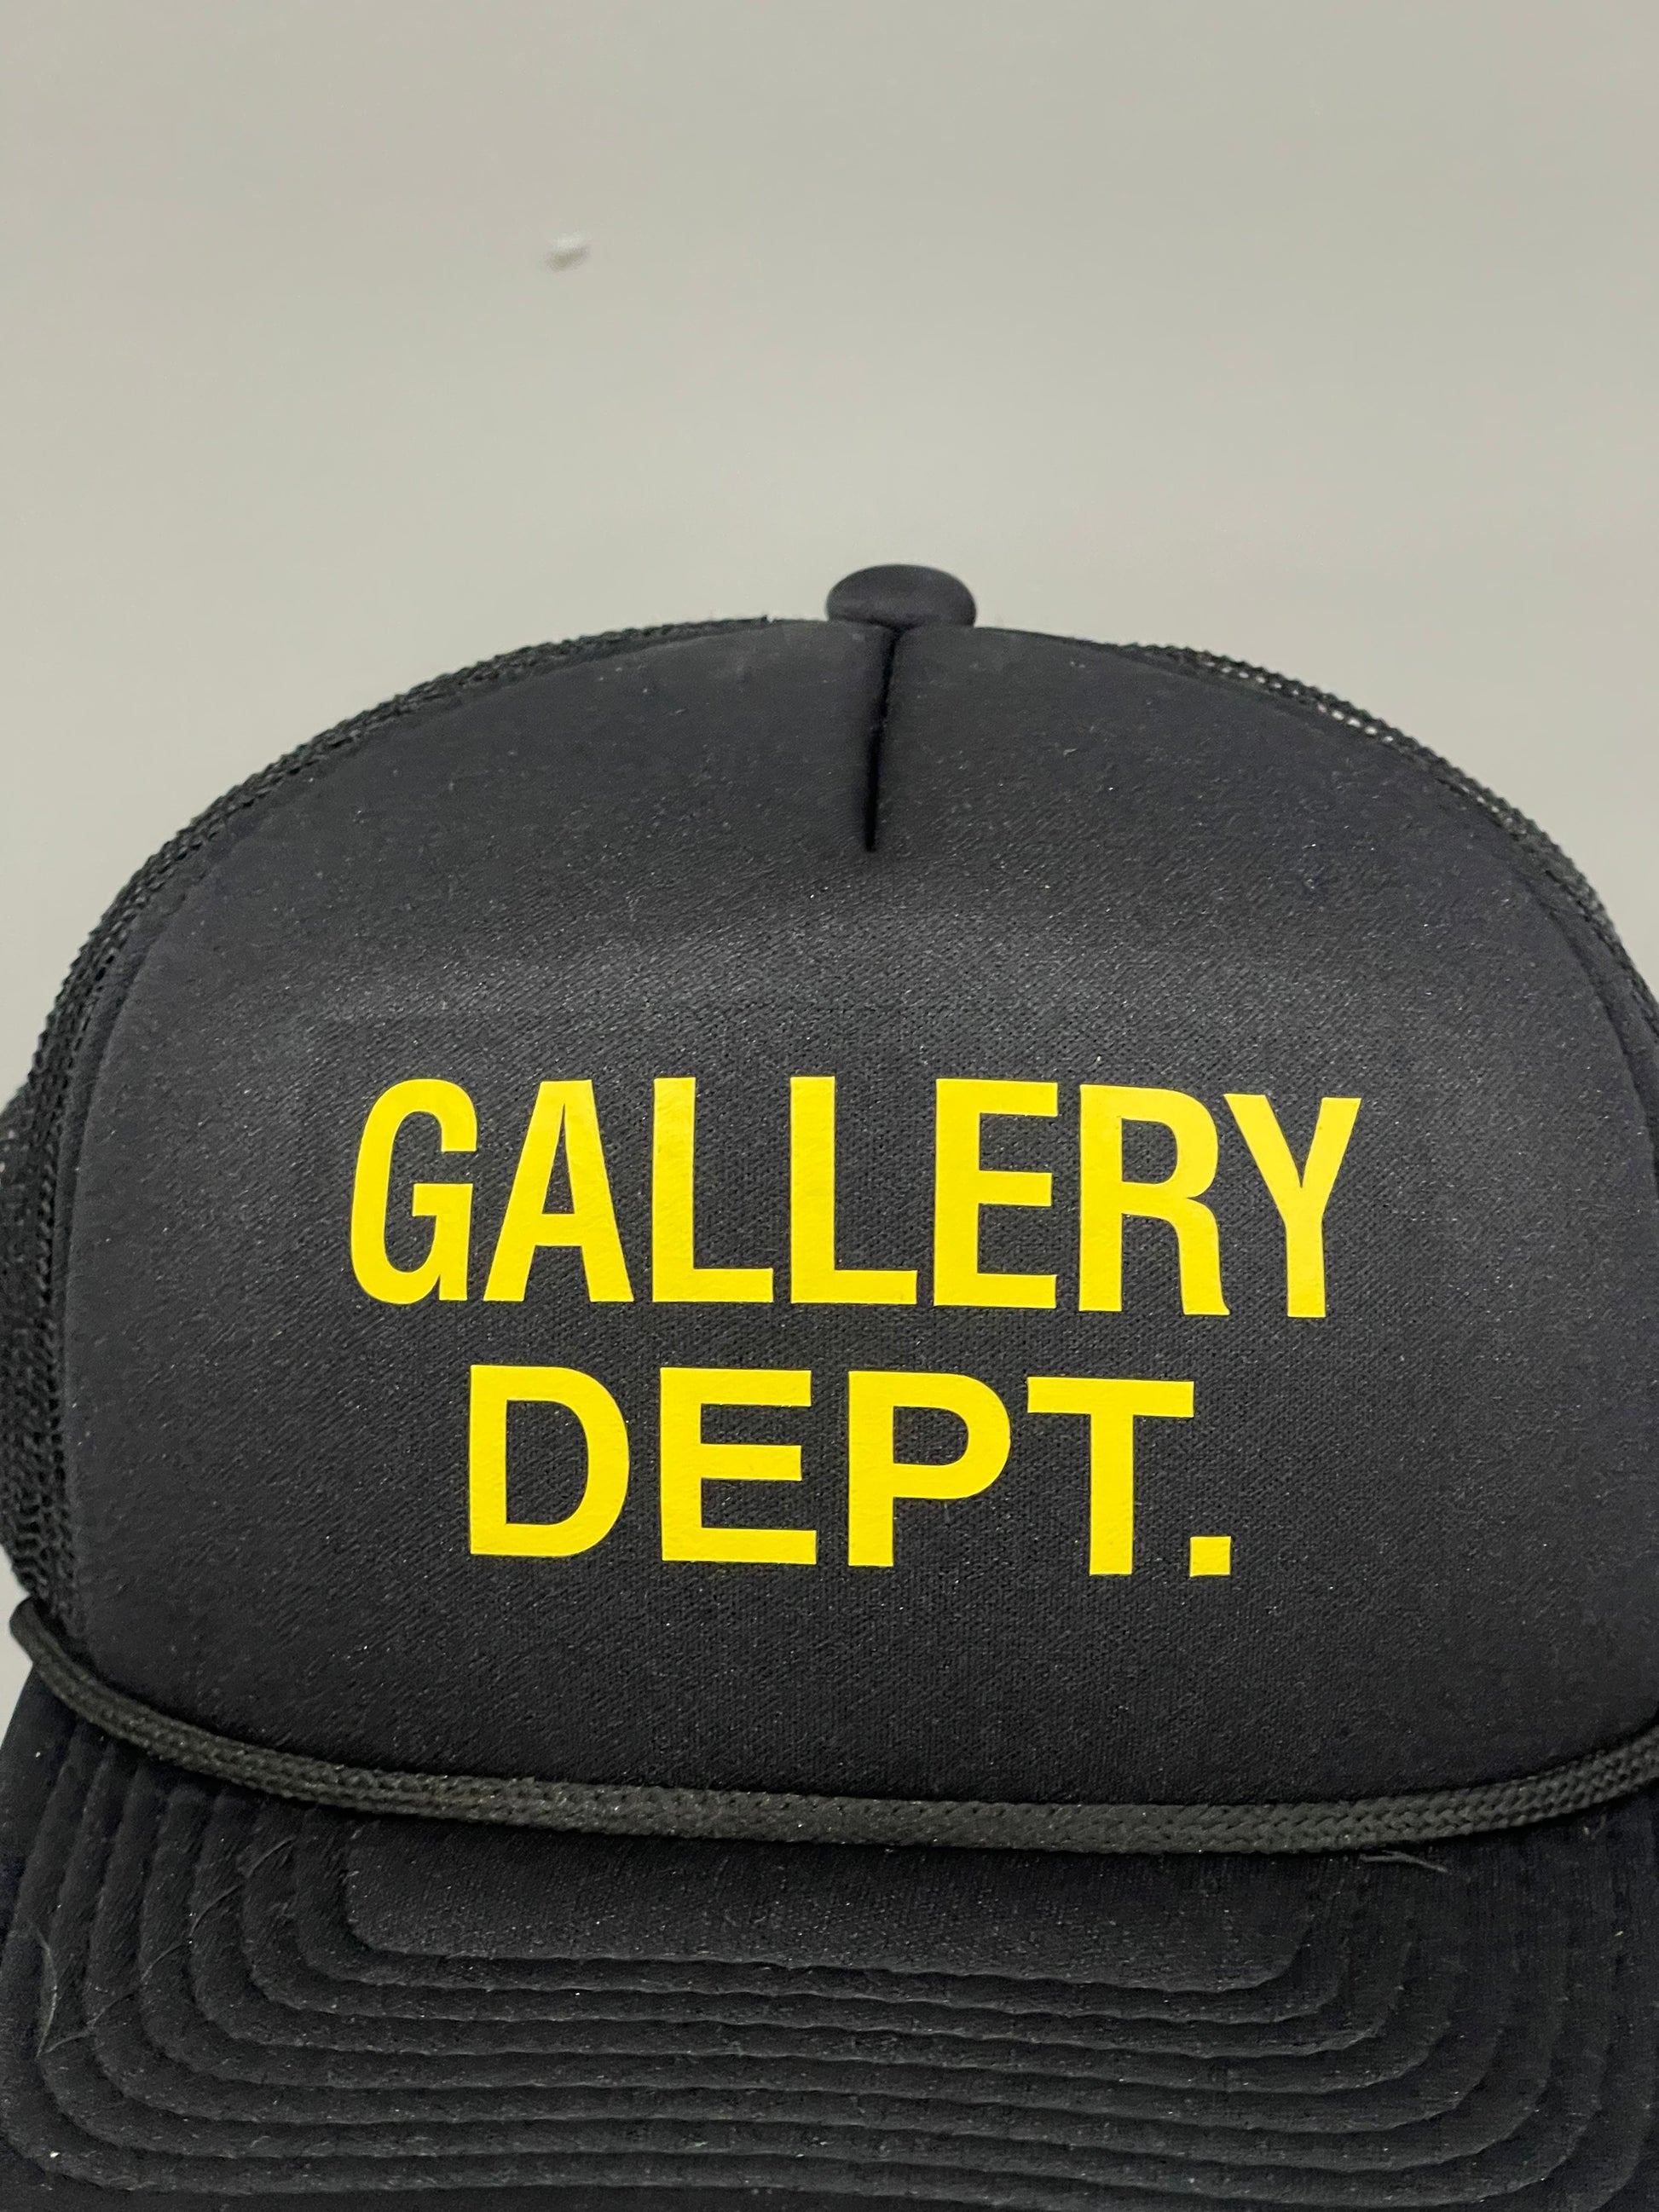 Gallery Dept - online